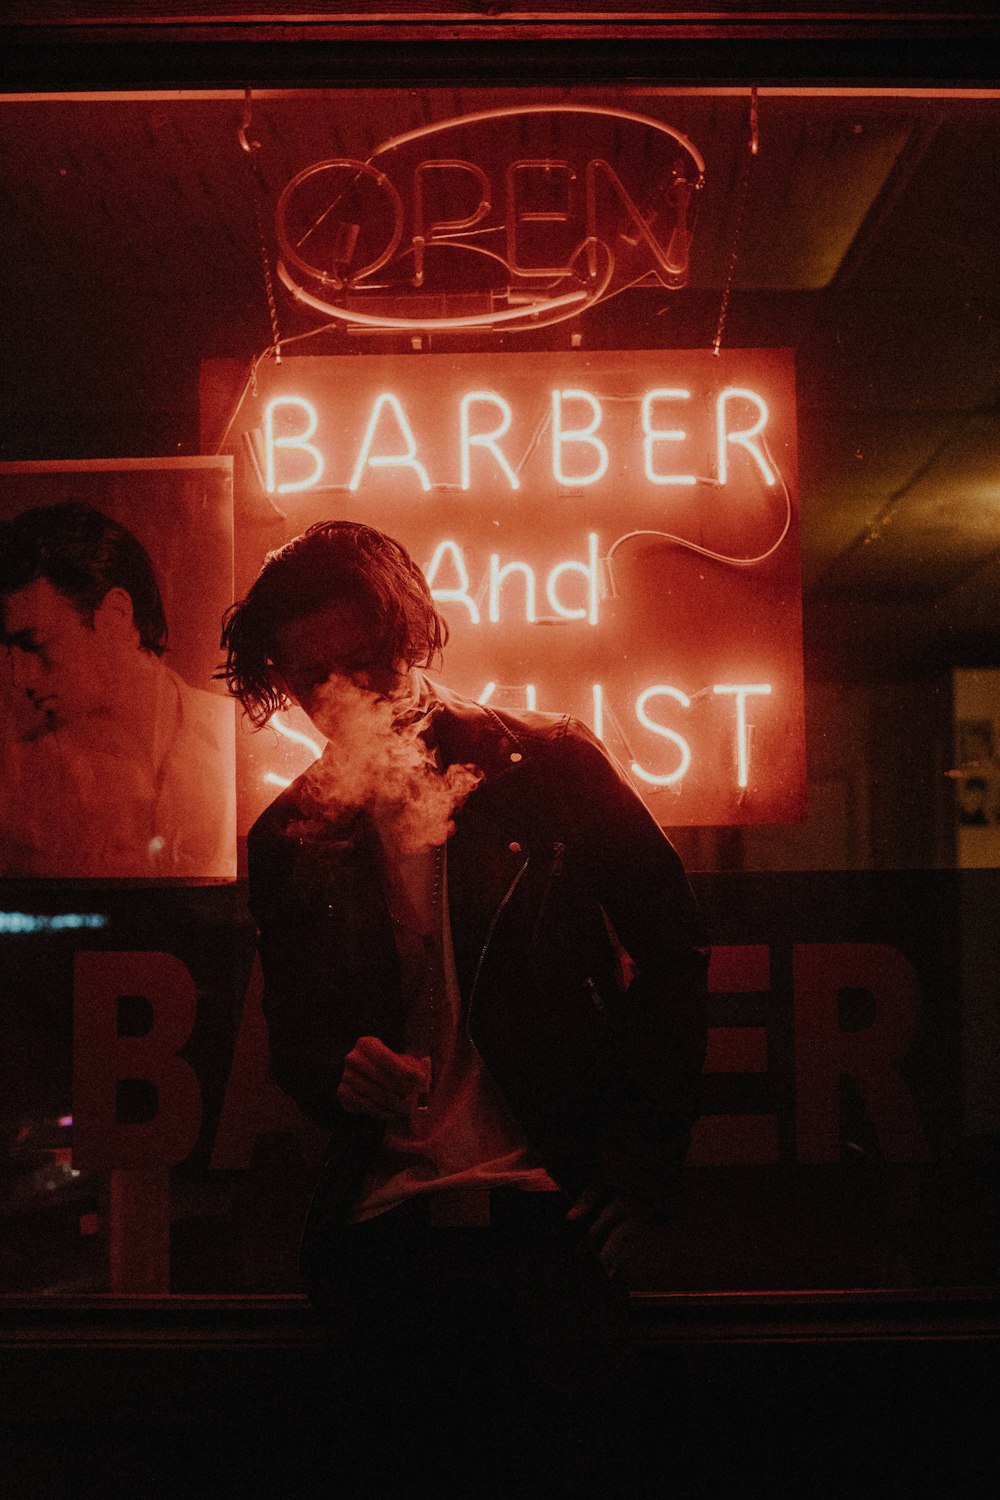 Mann raucht vor Friseur-Neonlicht-Beschilderung